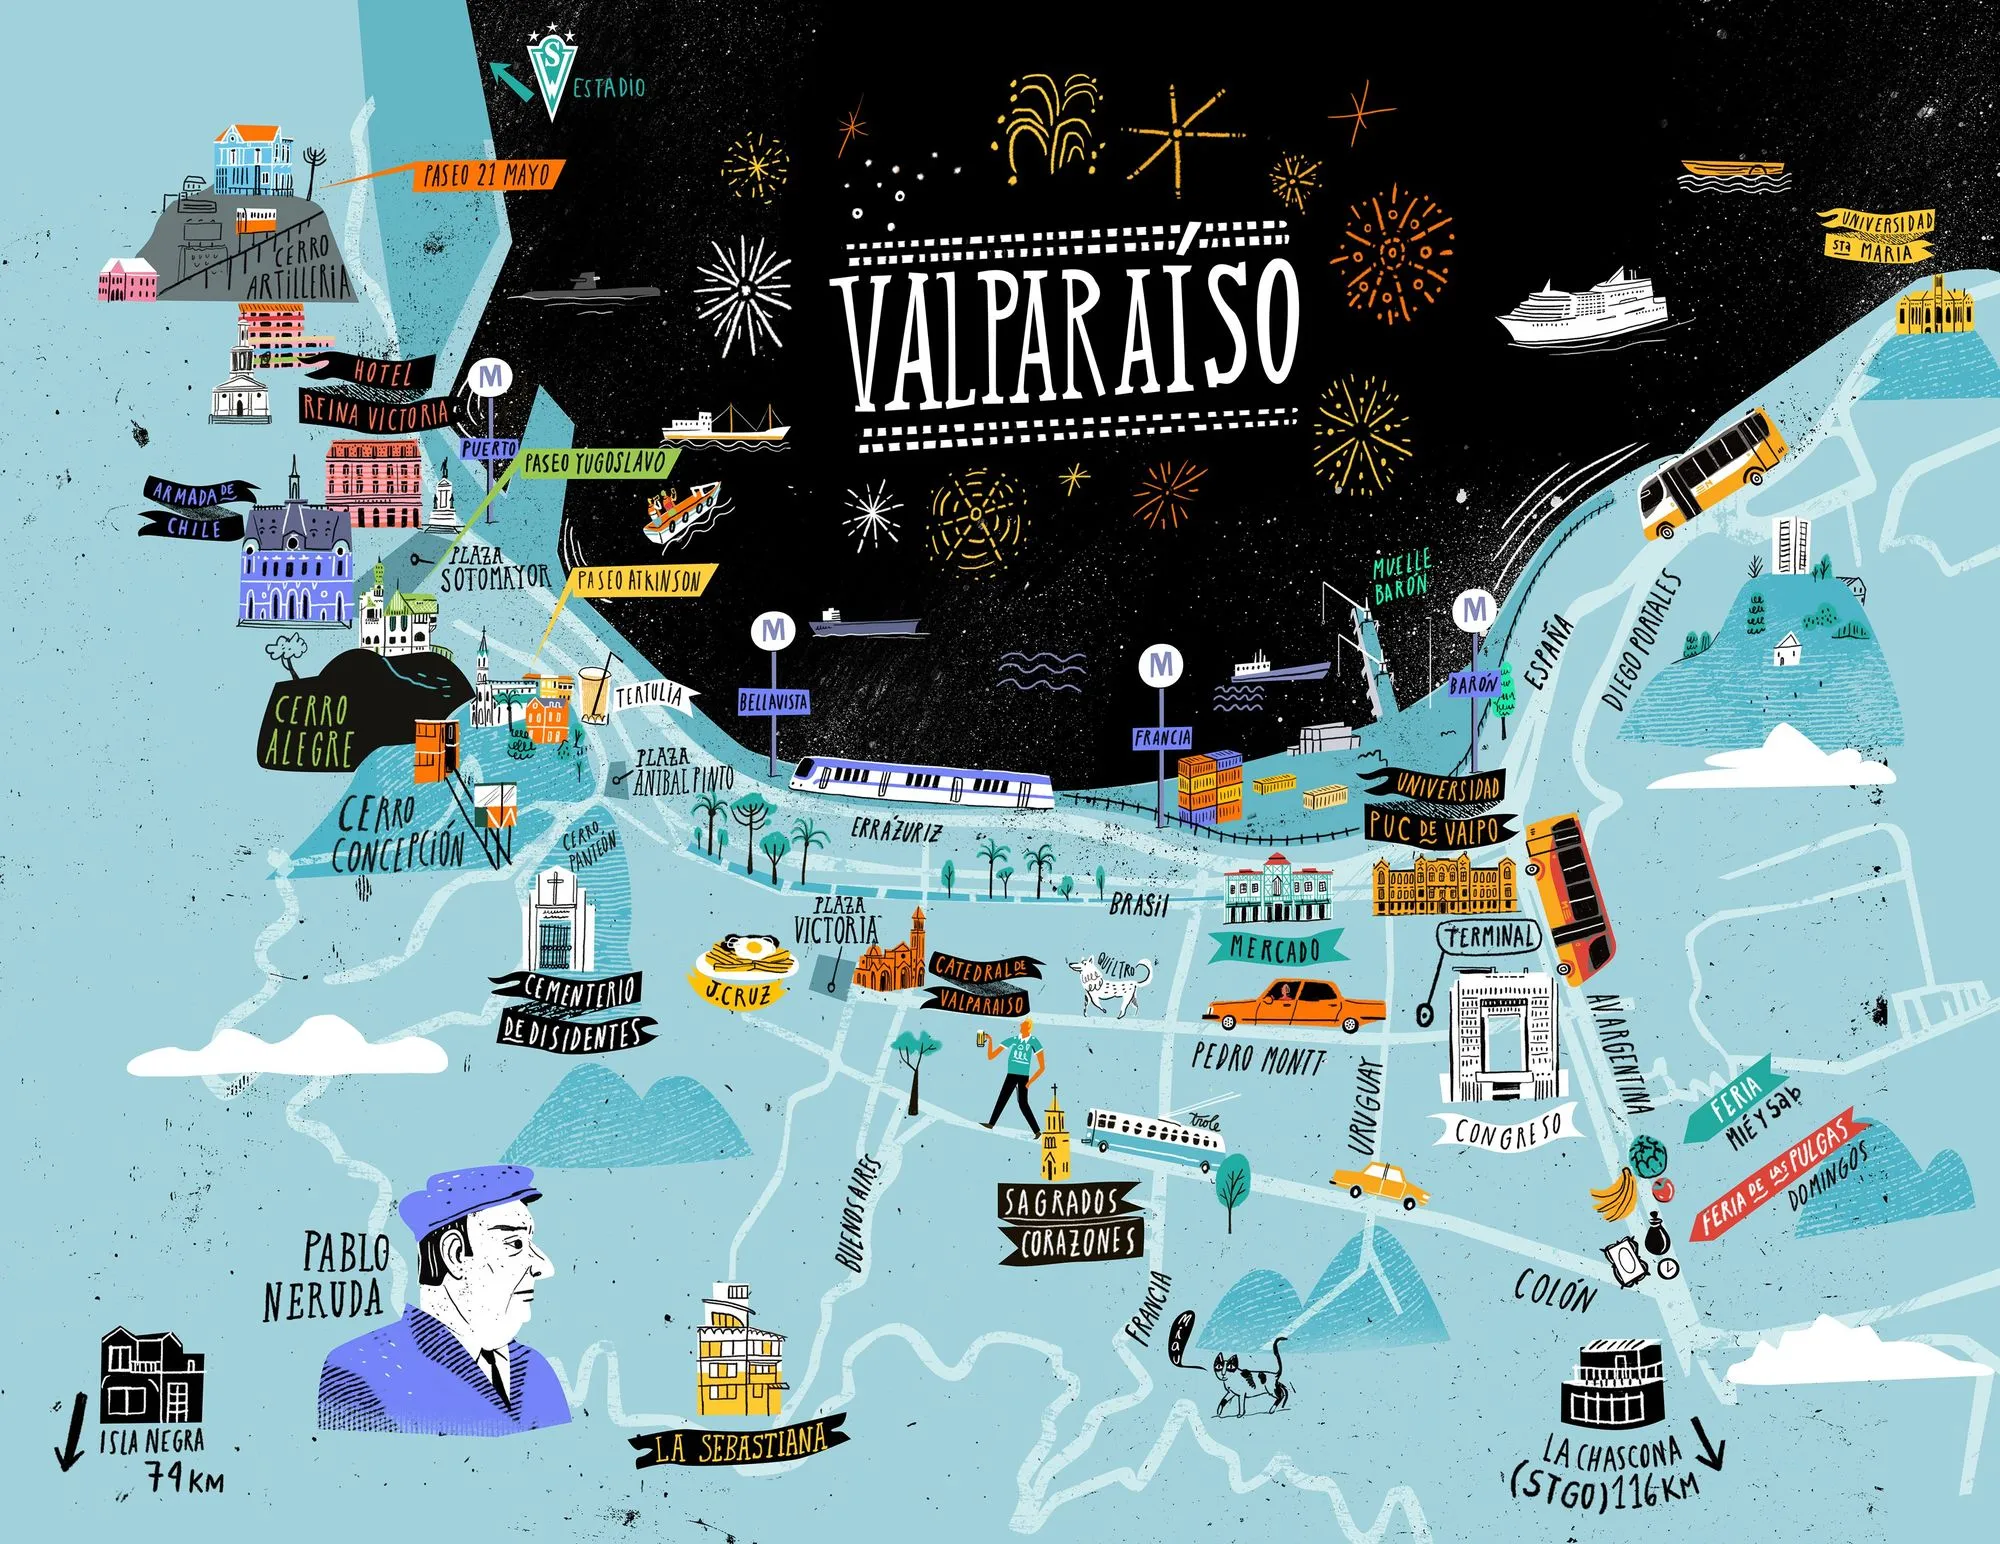 Oyematias, Mapa de Valparaíso, 2014.